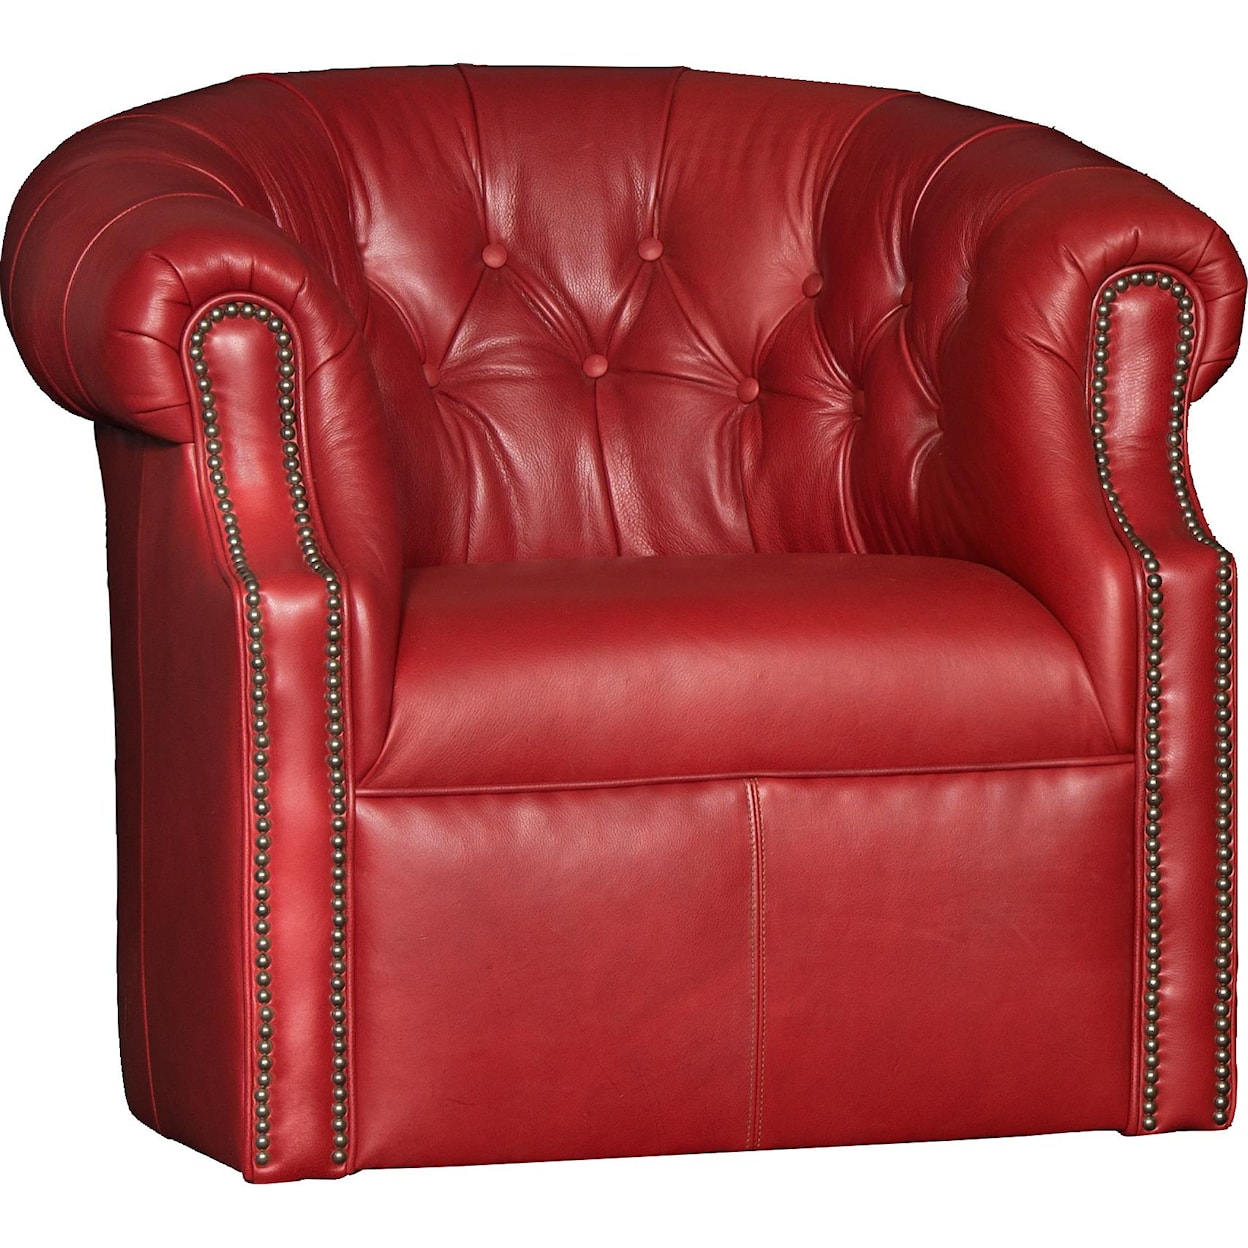 Mayo 8220 Swivel Chair